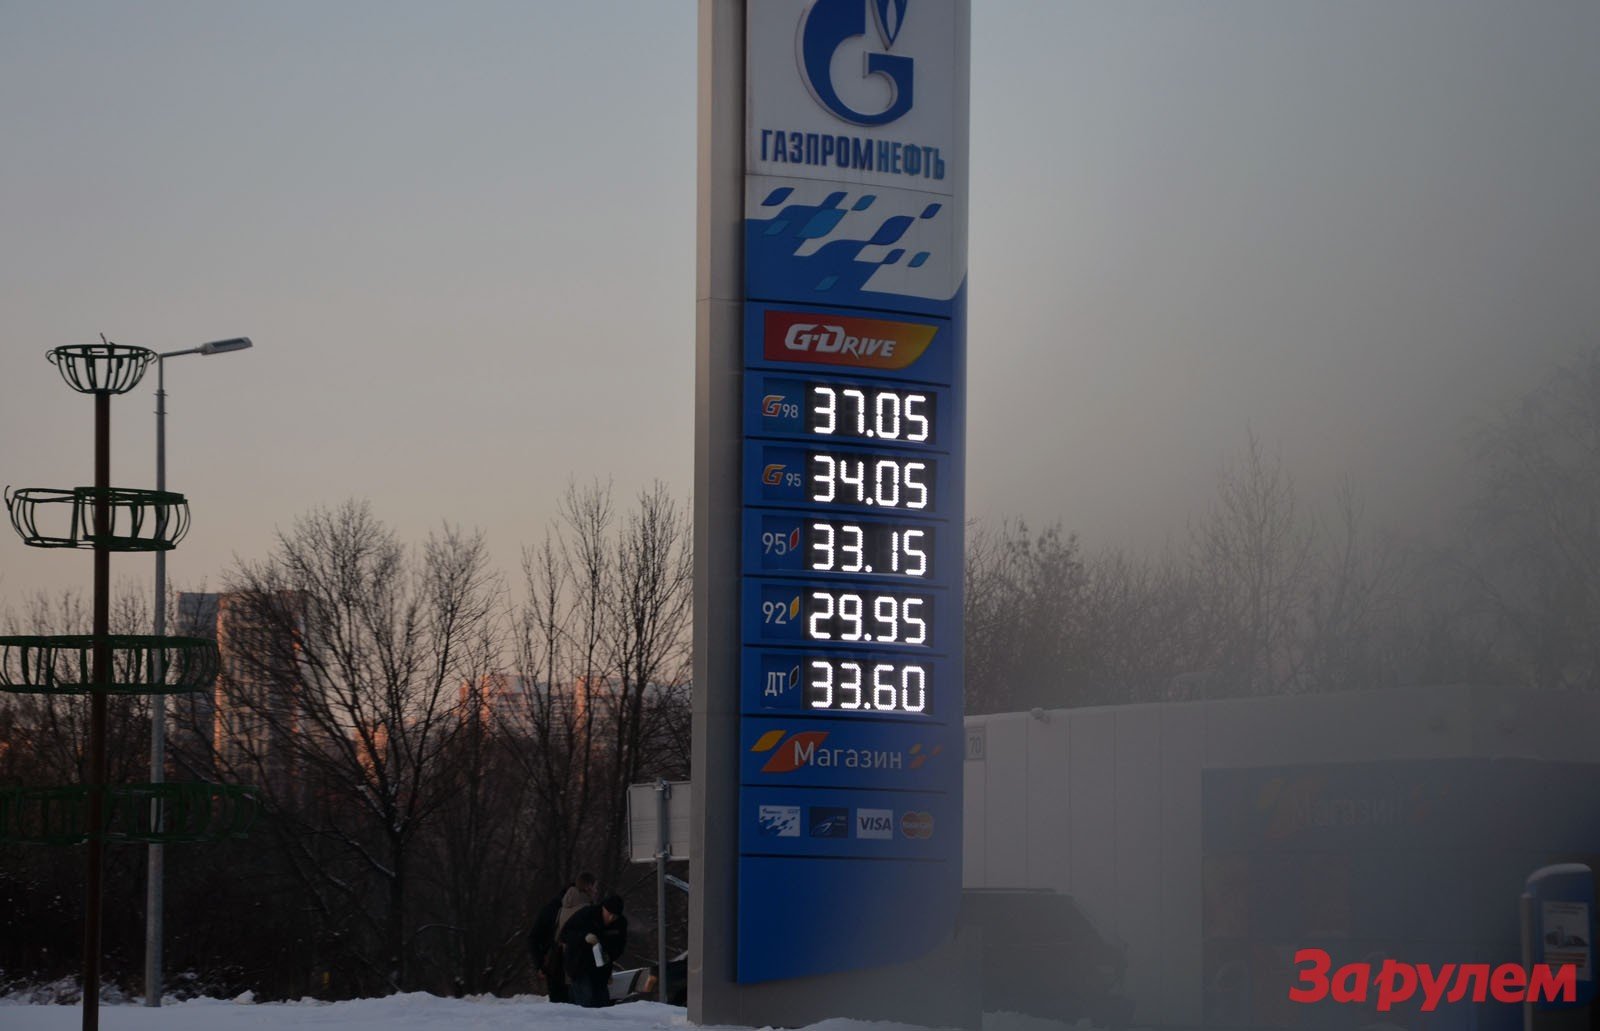 Бензин в ростове на дону сегодня. Цены на бензин в 2014. Бензин в 2014 году в России. Стоимость бензина в 2014 году. Бензин 95 в 2014.